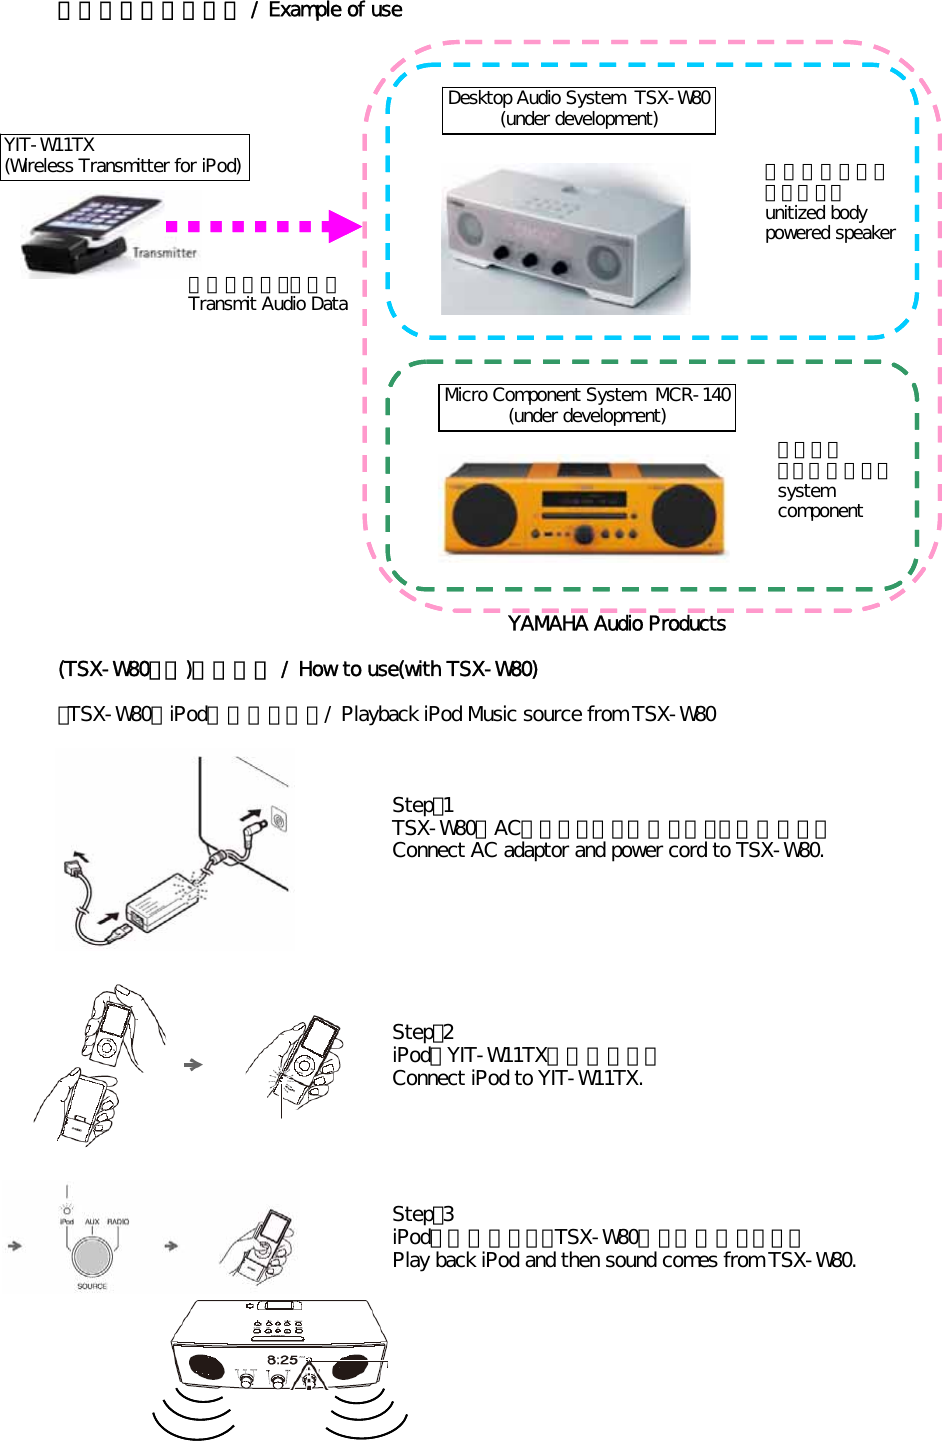 組み合わせ機器の例 / Example of useYAMAHA Audio Products(TSX-W80との)使用方法 / How to use(with TSX-W80)・TSX-W80でiPodの音楽を聴く / Playback iPod Music source from TSX-W80Step：1TSX-W80にACアダプターと電源コードを接続する。Connect AC adaptor and power cord to TSX-W80.Step：2iPodをYIT-W11TXに接続する。Connect iPod to YIT-W11TX.Step：3iPodを再生すると、TSX-W80から音が聞こえる。Play back iPod and then sound comes from TSX-W80.Desktop Audio System  TSX-W80(under development)YIT-W11TX(Wireless Transmitter for iPod) 一体型パワードスピーカーunitized bodypowered speaker無線オーディオ送信Transmit Audio DataMicro Component System  MCR-140(under development)システムコンポーネントsystemcomponent